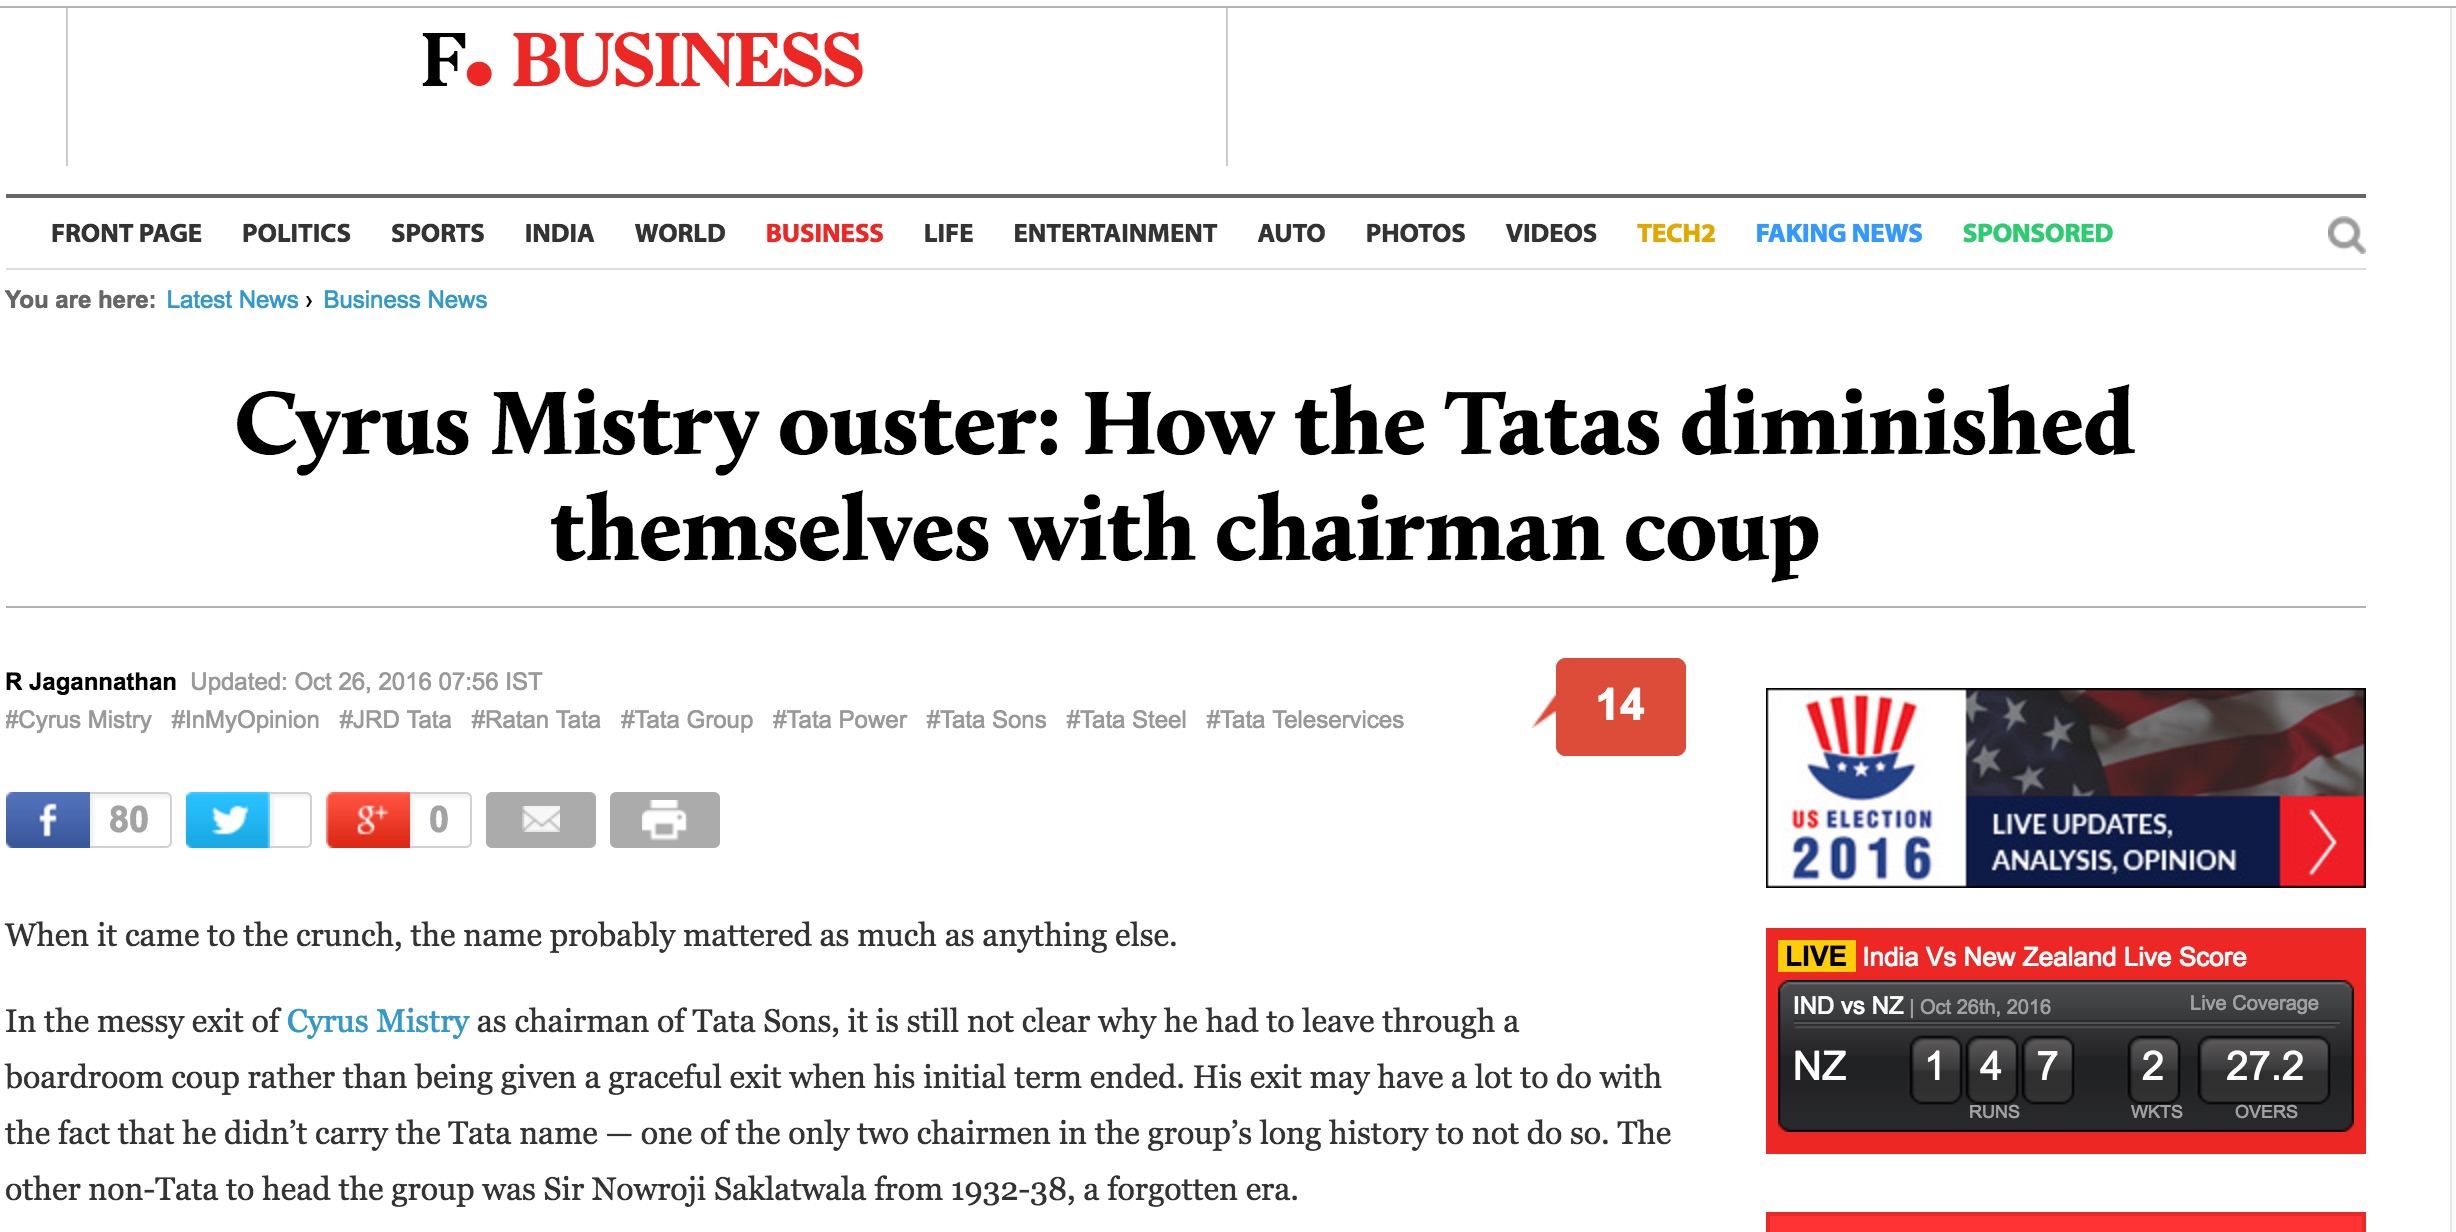 Le PDG de Tata, plus gros conglomérat indien, Cyrus Misty a été licencié provoquant la surprise et redonnant les règles à un ancien dirigeant, Ratan Tata. Copie d'écran du First Post, le 26 octobre 2016.